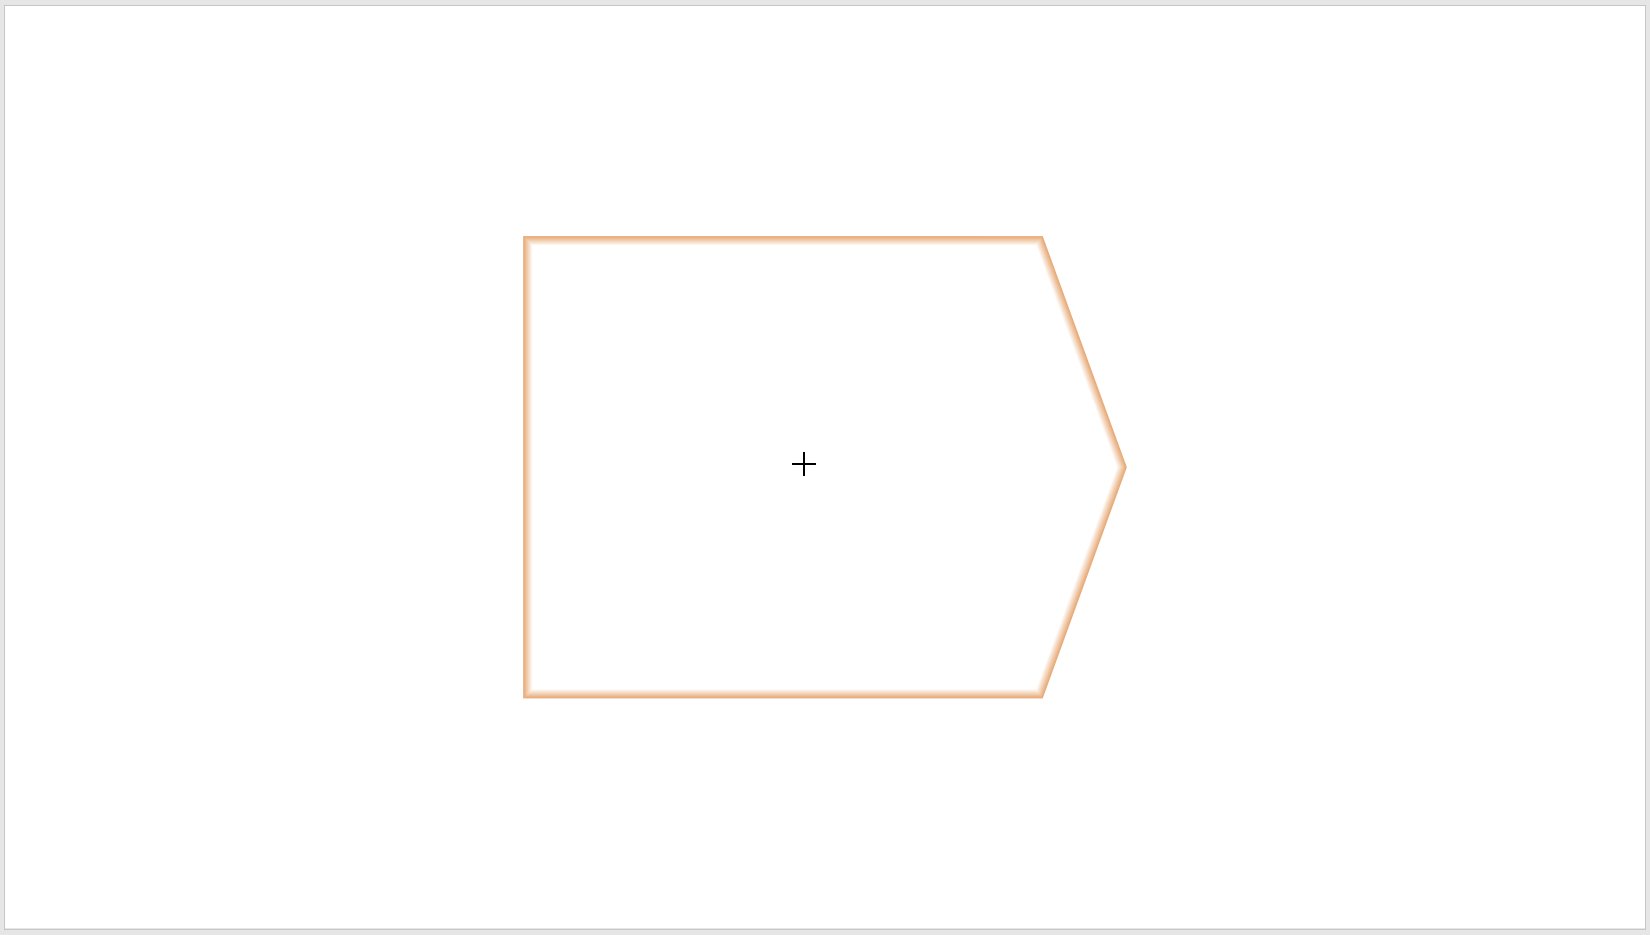 контуры заполнителя отображаются при вставке пятиугольника.